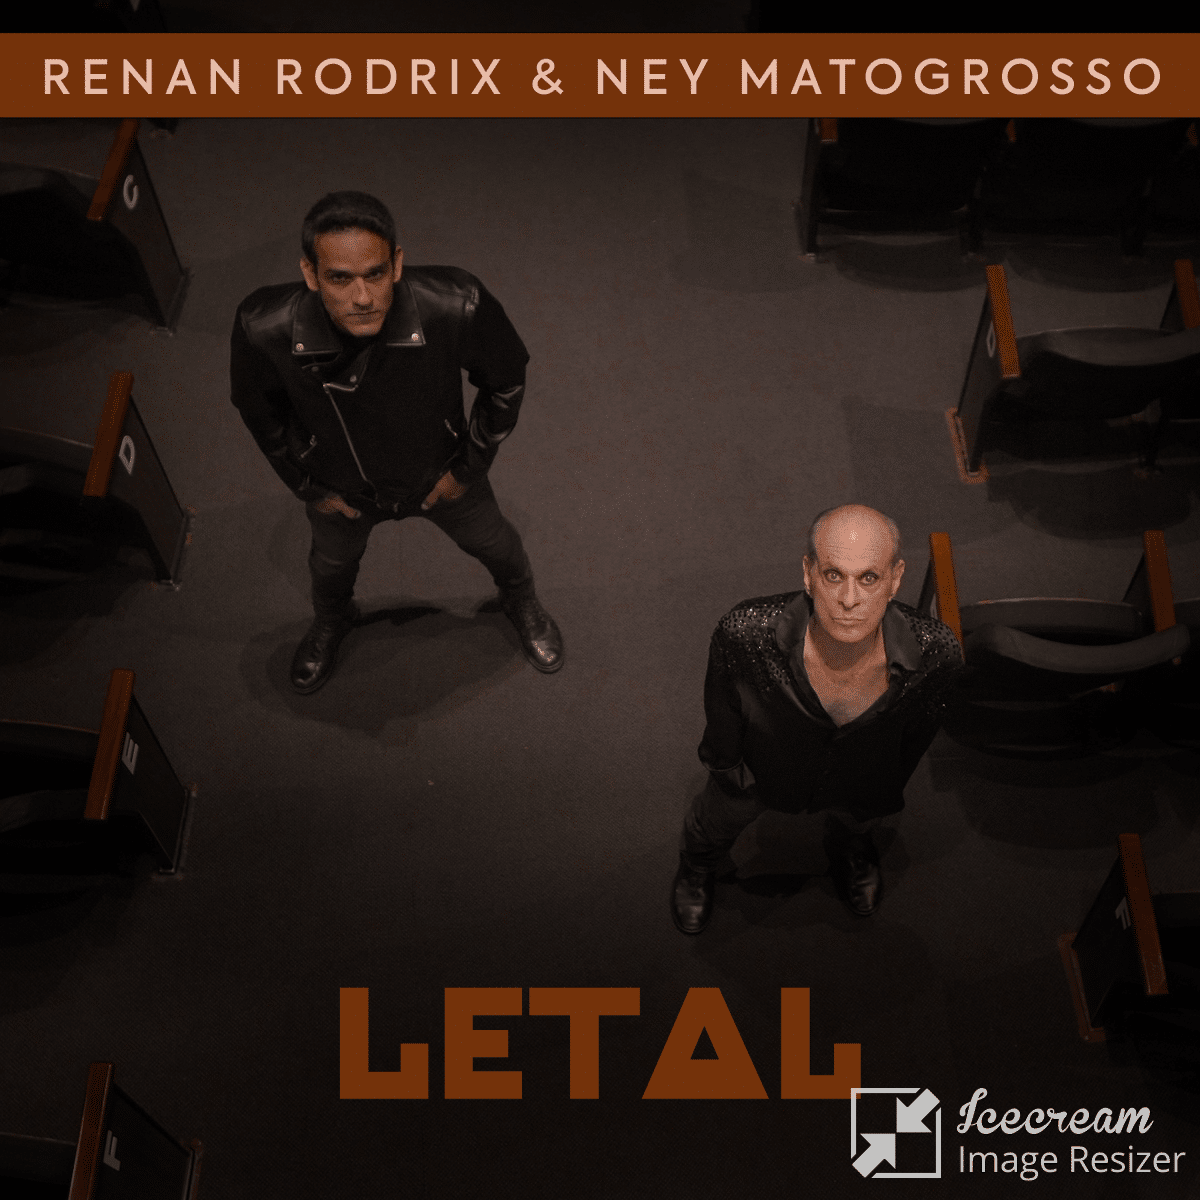 revistaprosaversoearte.com - Ney Matogrosso e Renan Rodrix lançam a canção ‘Letal’